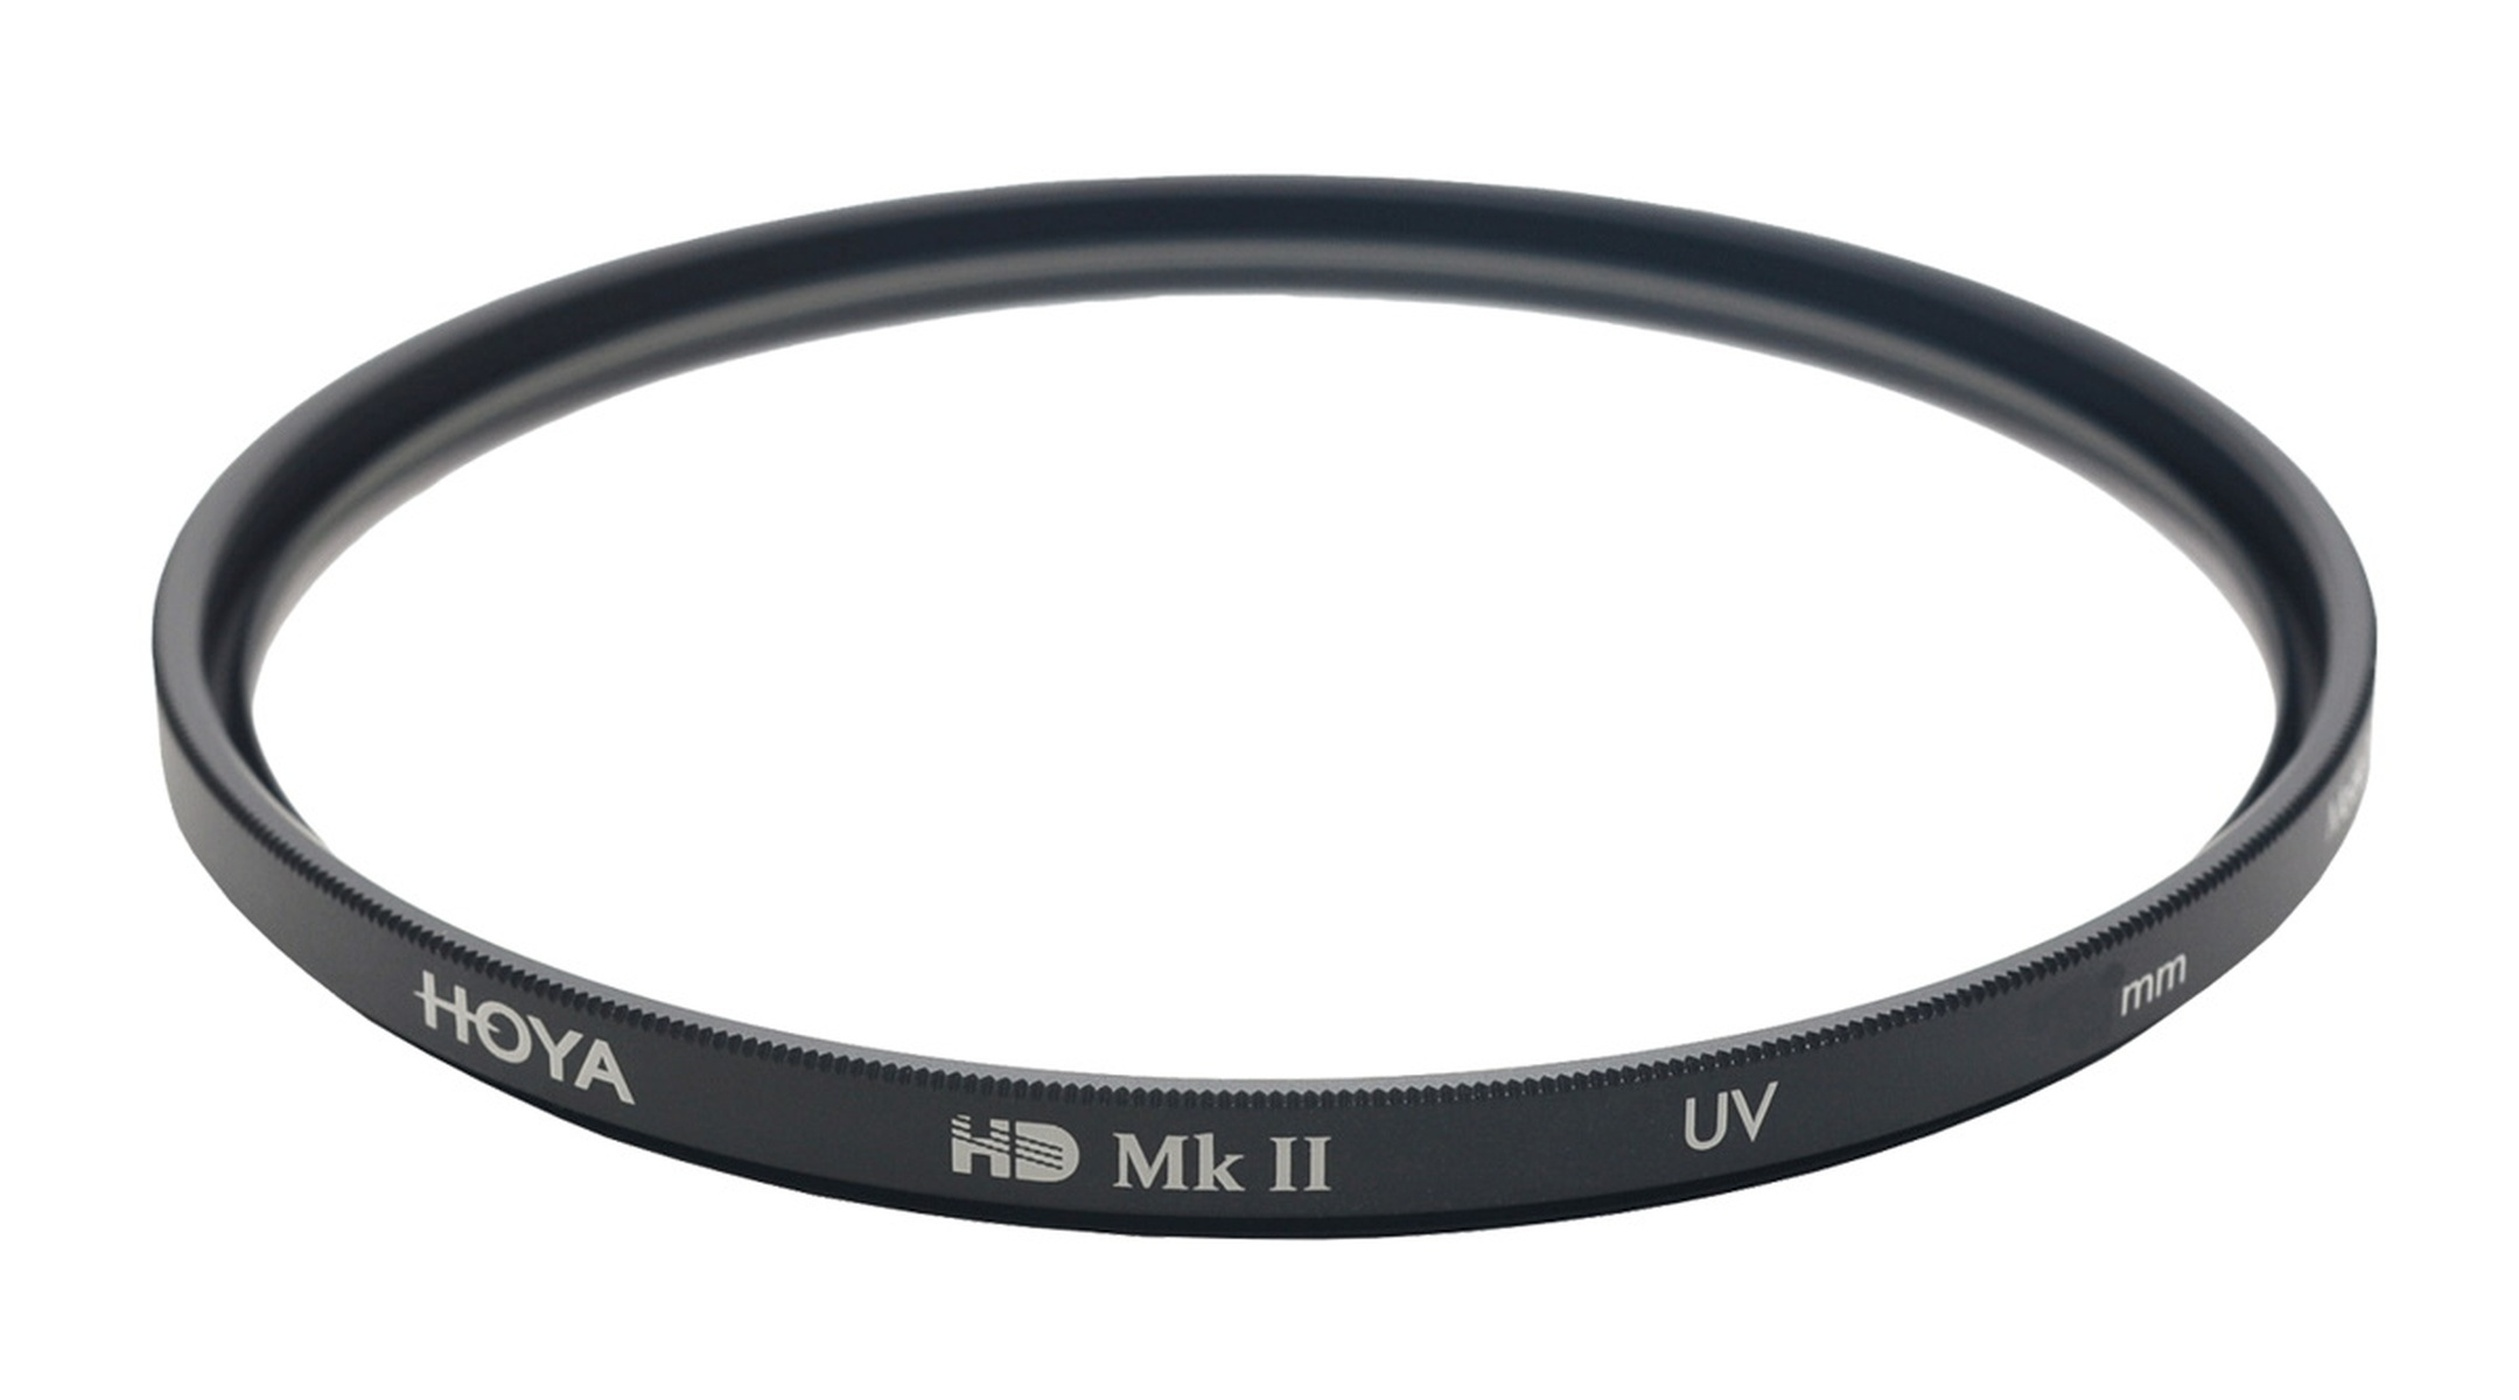 HOYA HD UV 82mm UV Filter 82 Filter mm MkII